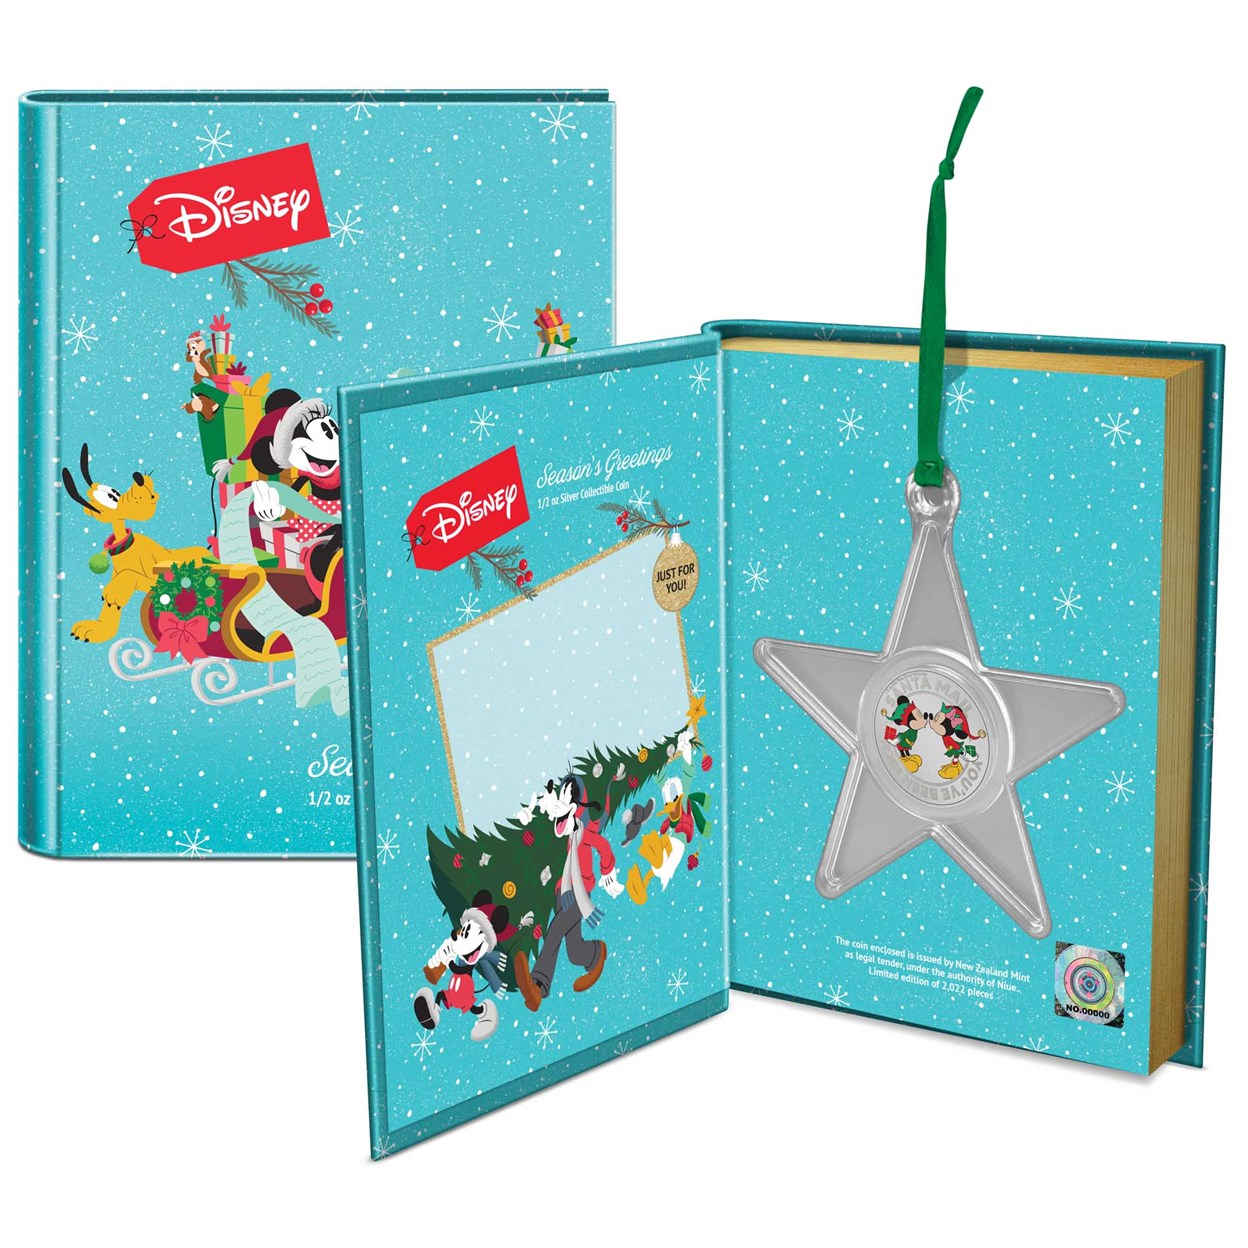 4 2022 Disney Seasons Greetings Booklet Packaging